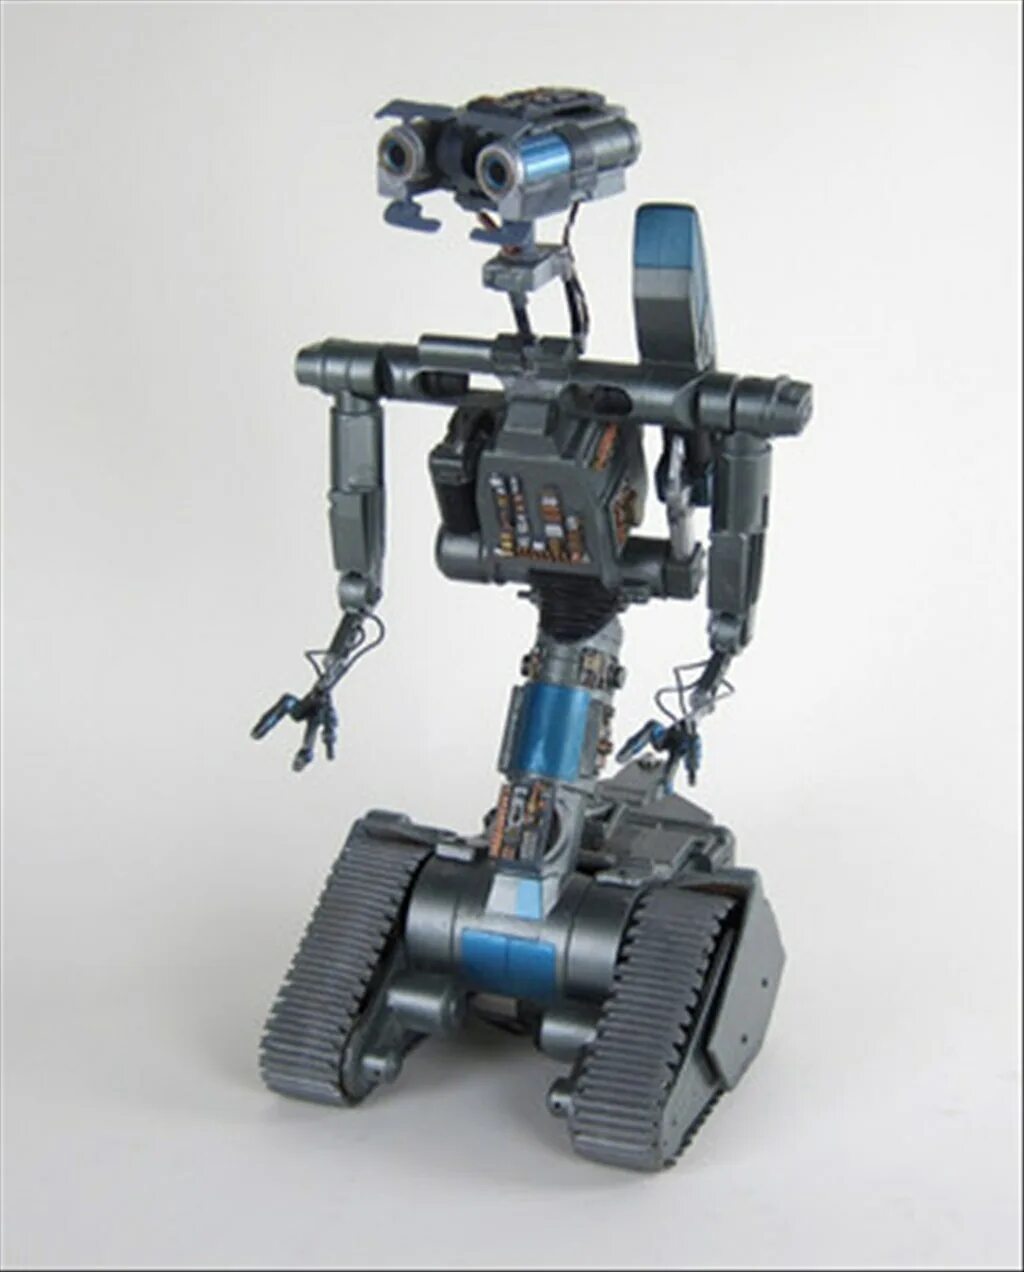 Short circuit Johnny 5 робот. Джонни 5 короткое замыкание. Робот Джонни 5 игрушка.